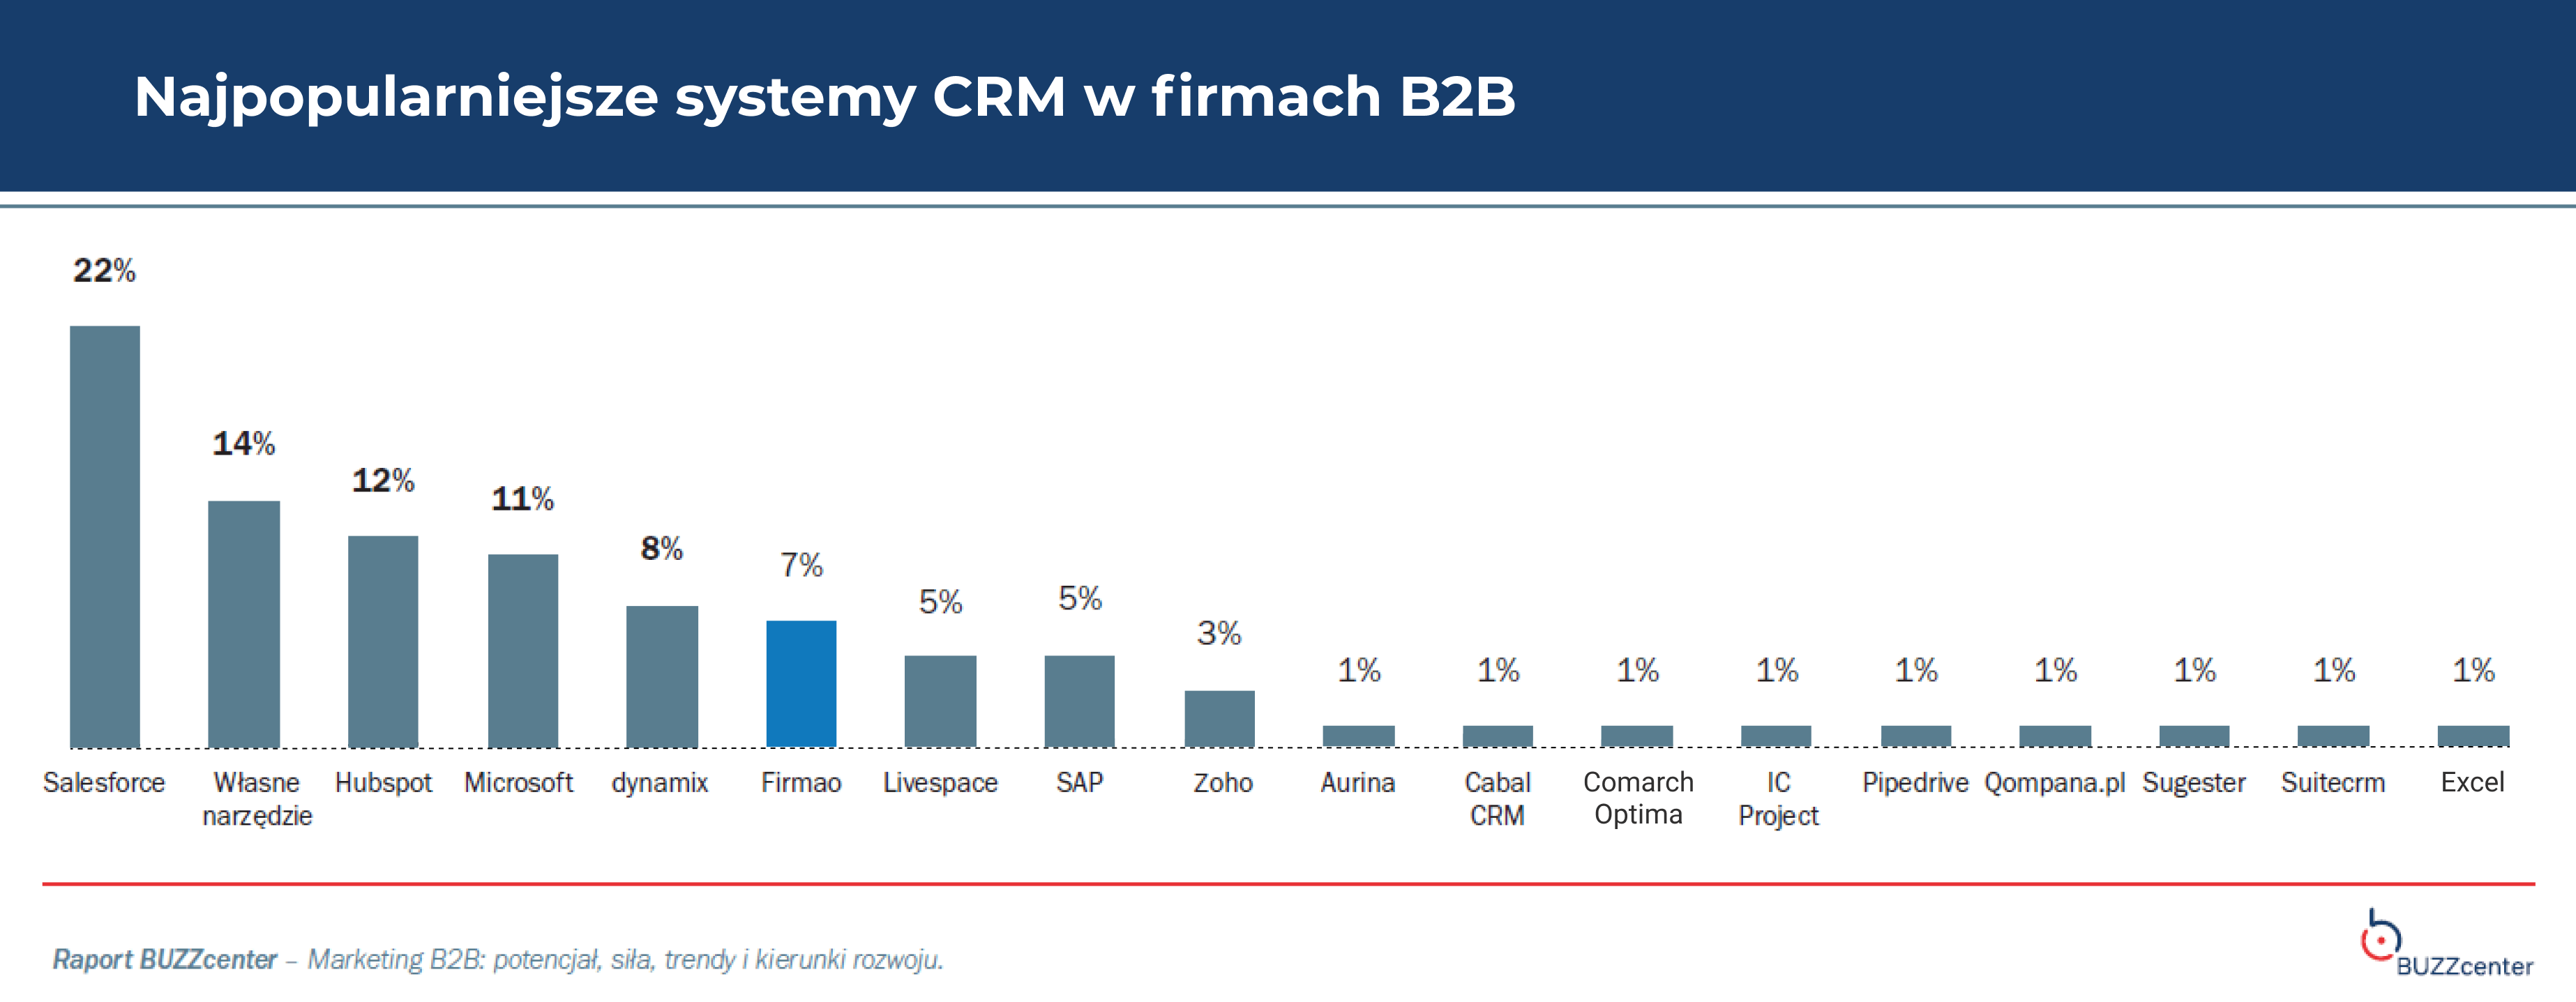 Najpopularniejsze systemy CRM w firmach B2B